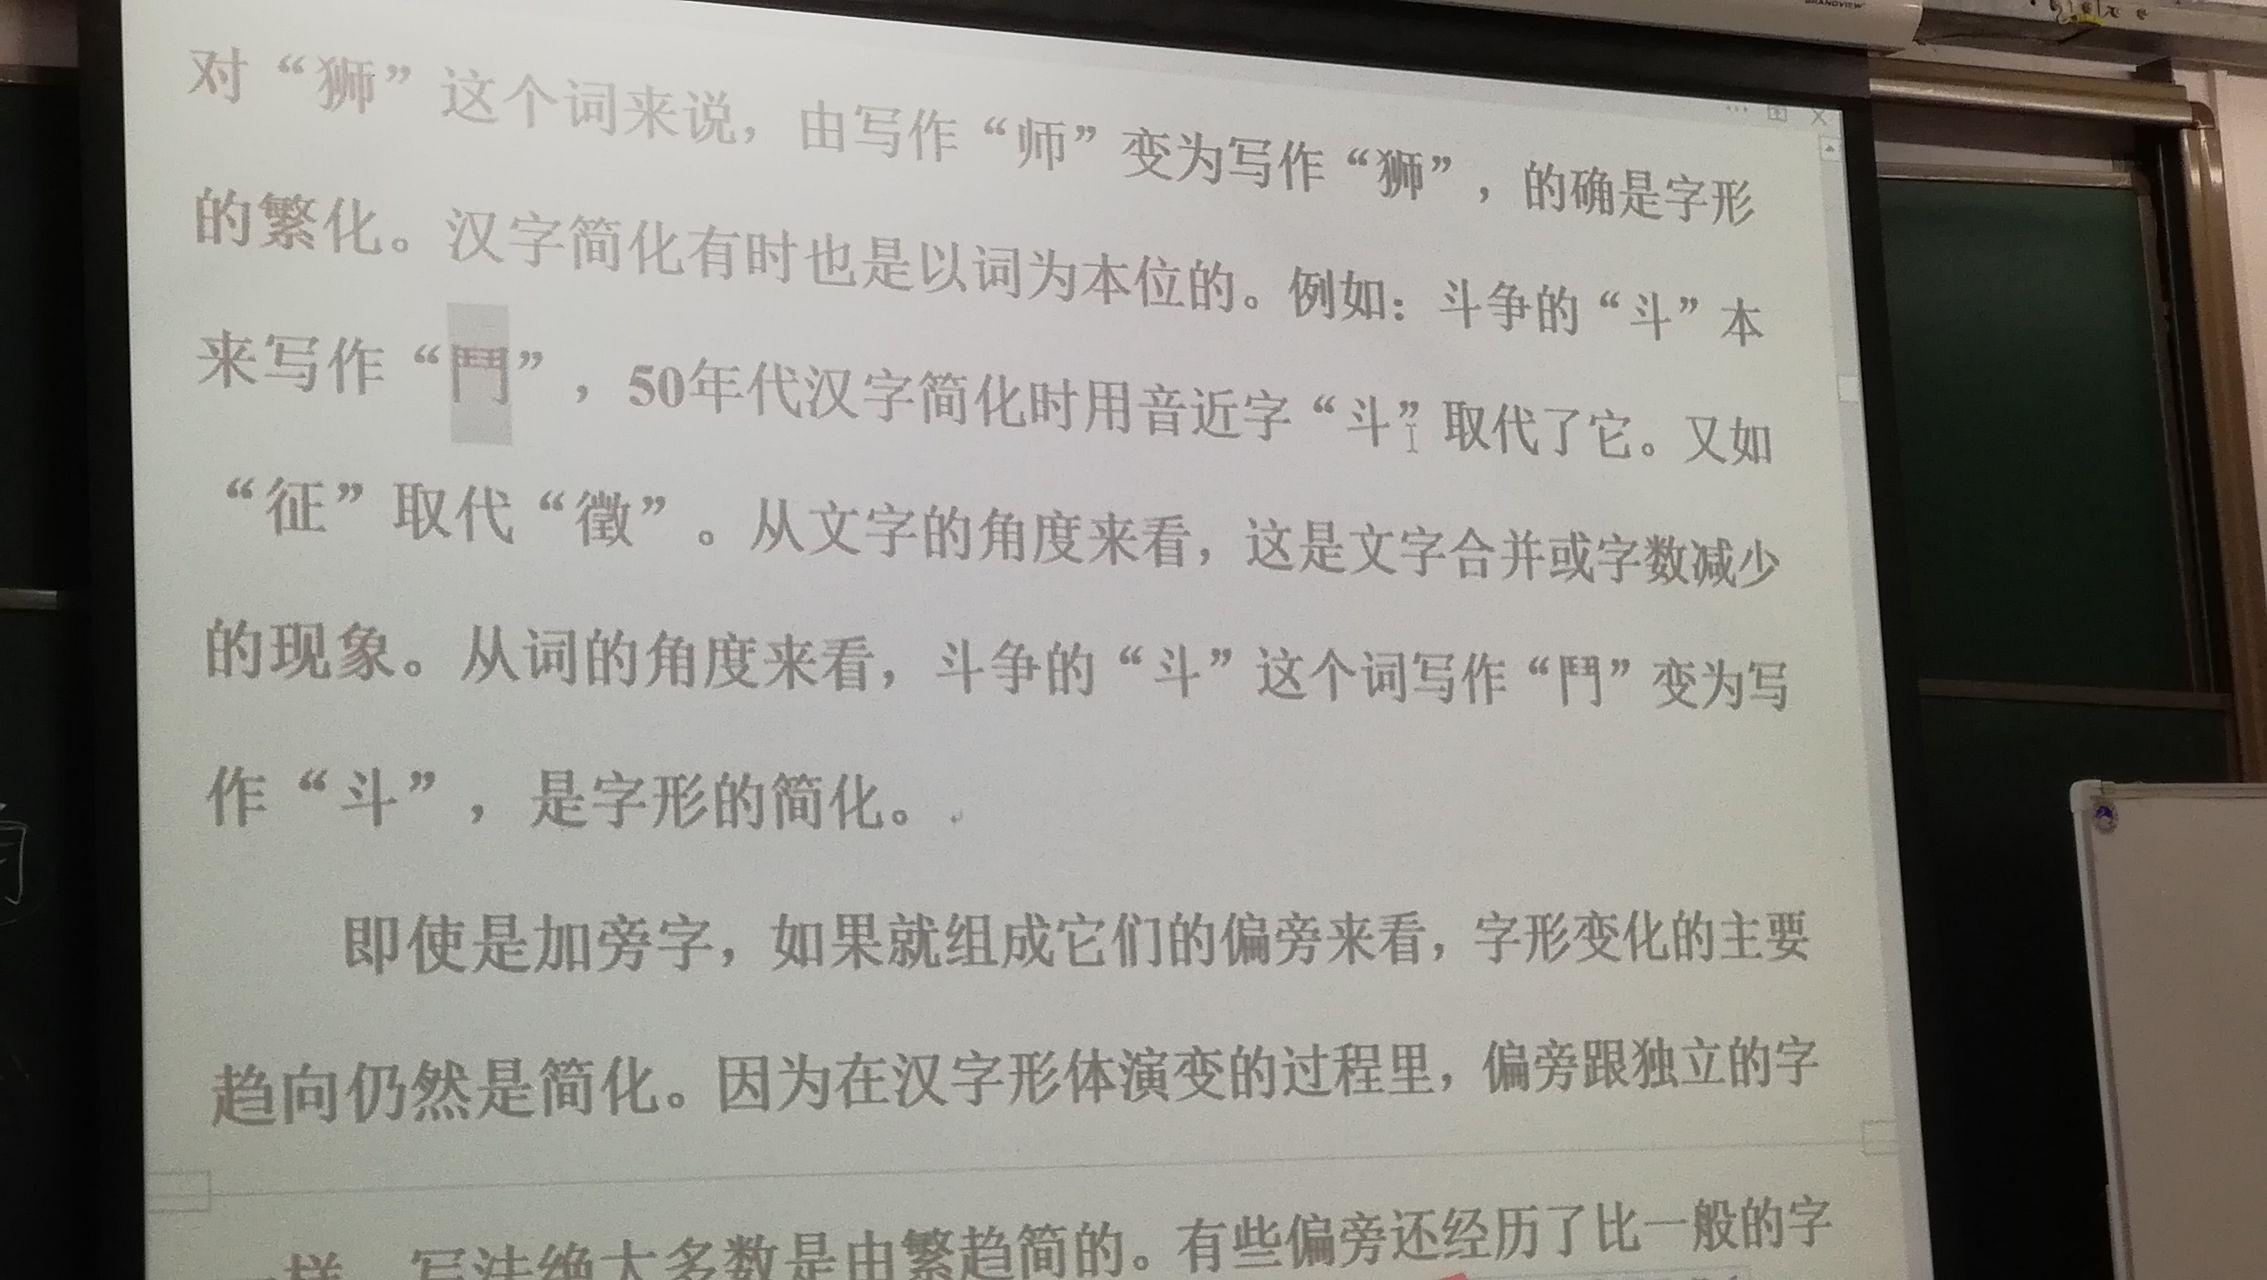 中国内地有没有可能恢复繁体字为规范汉字?